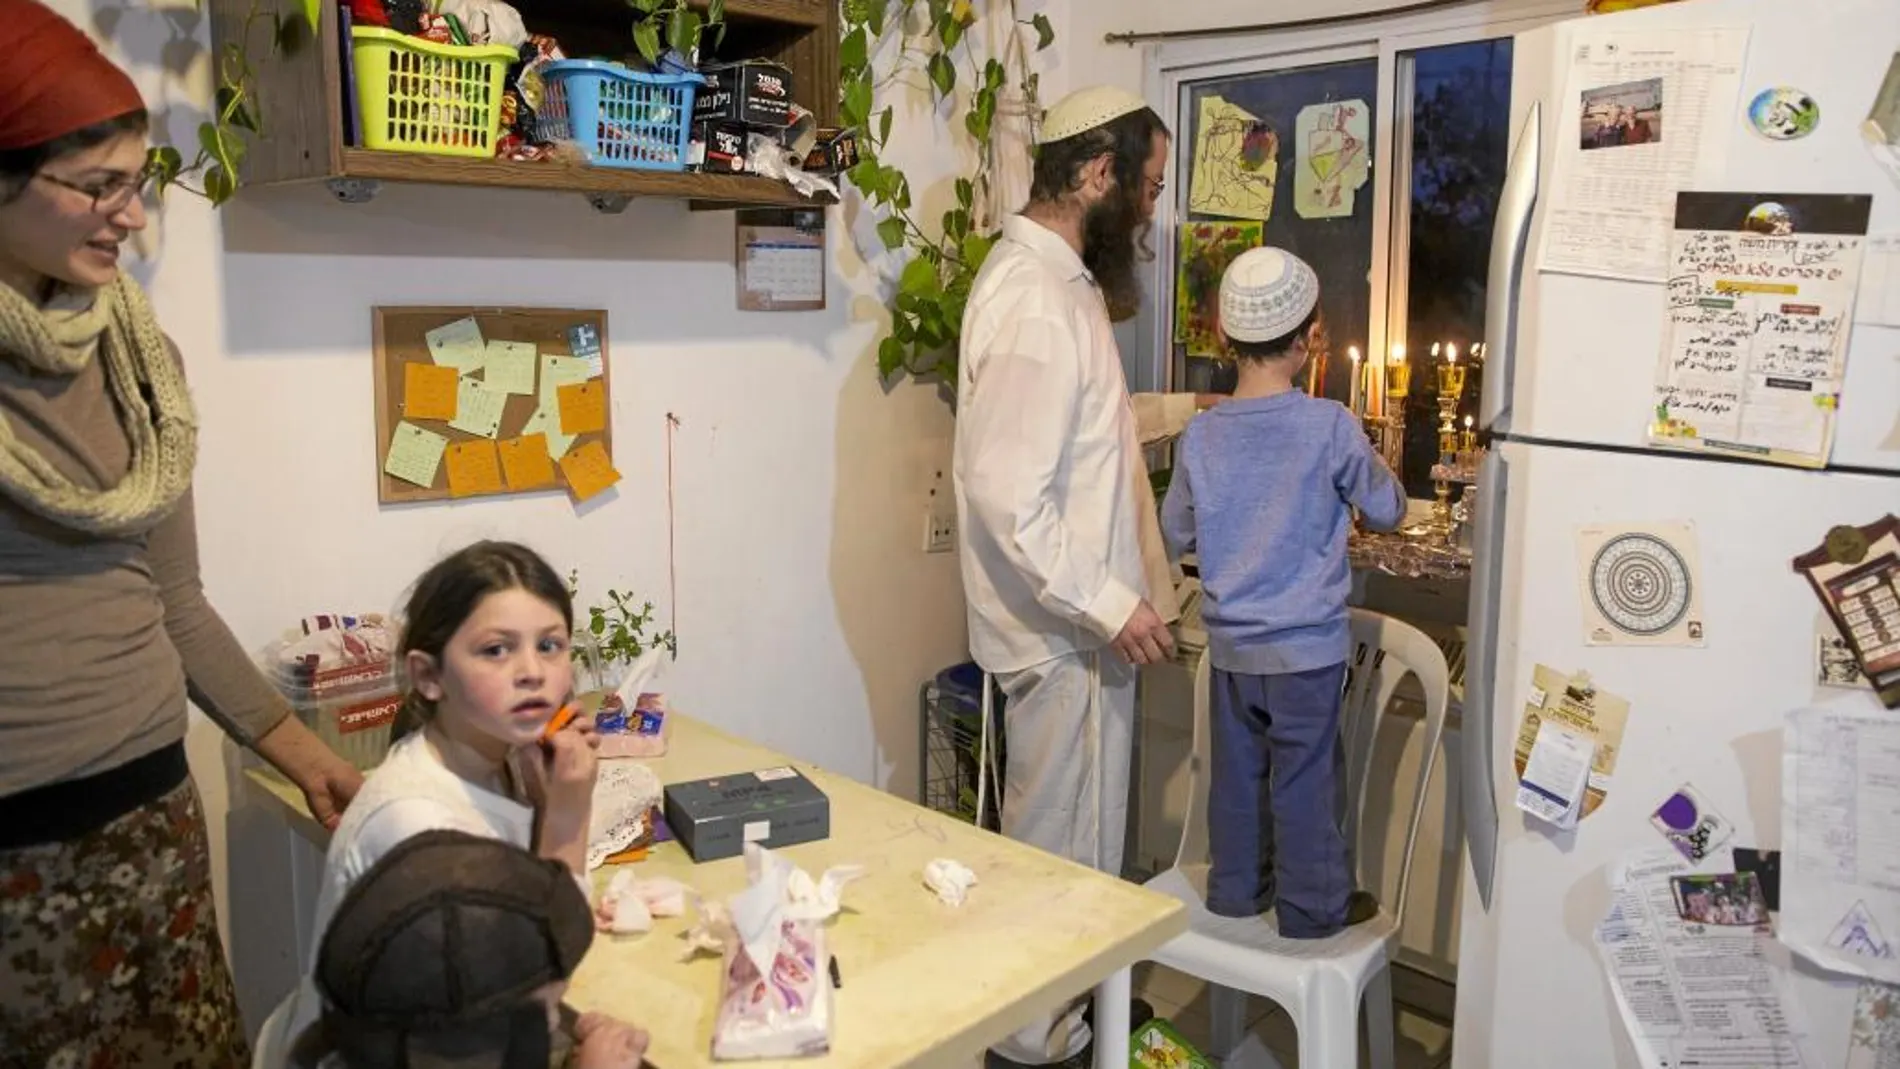 La familia Berko en su casa de Amona, un asentamiento judío en Cisjordania, coloca las velas de Hanukkah